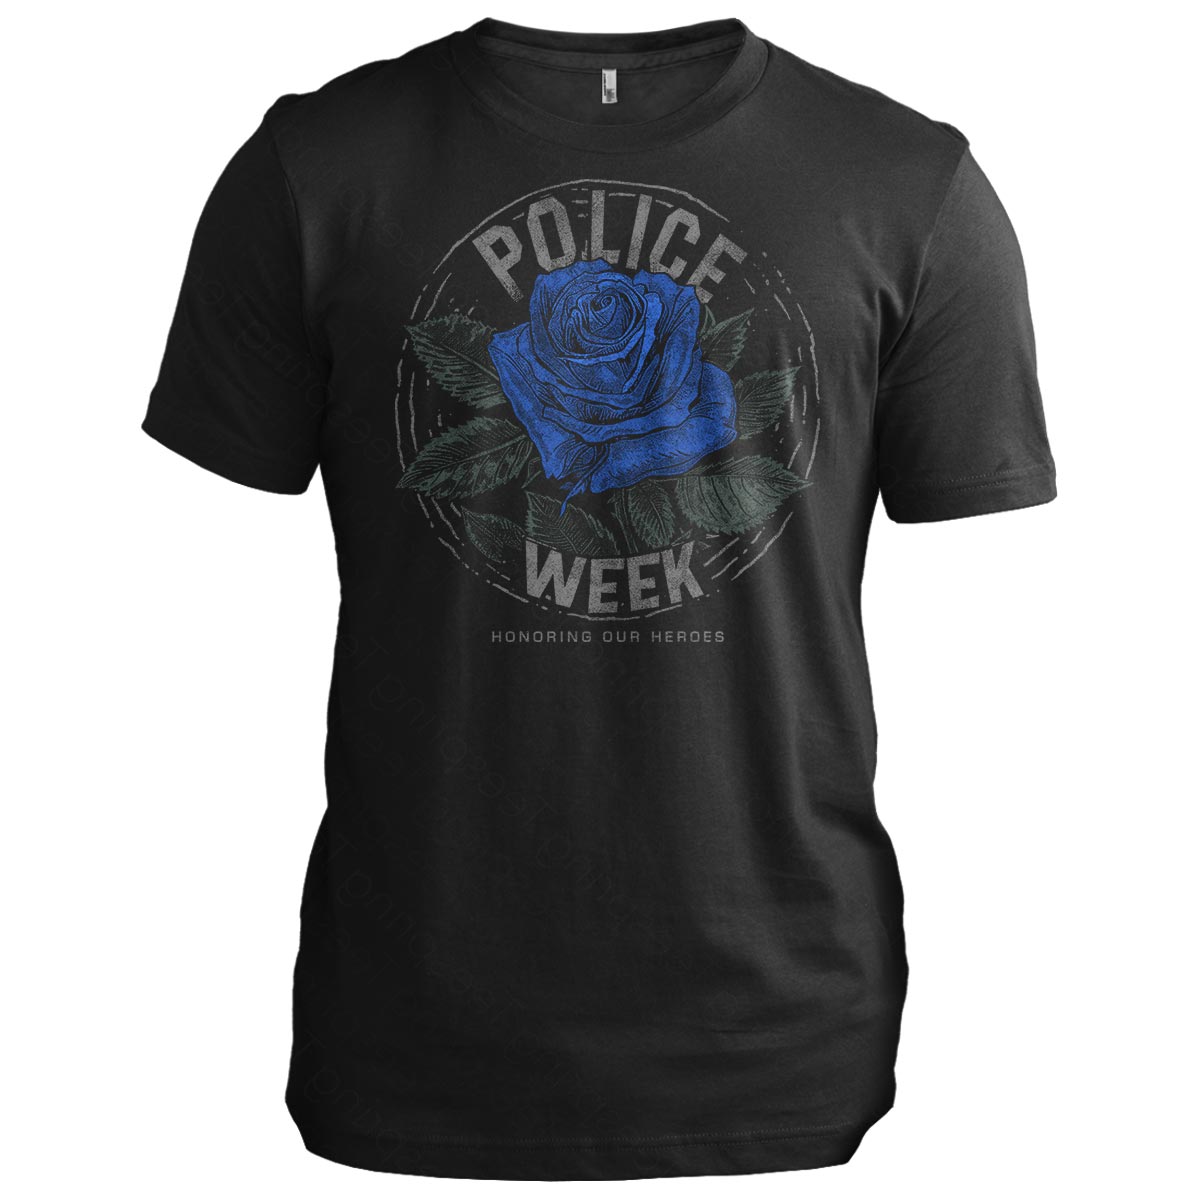 Police Week: Honoring Our Heroes